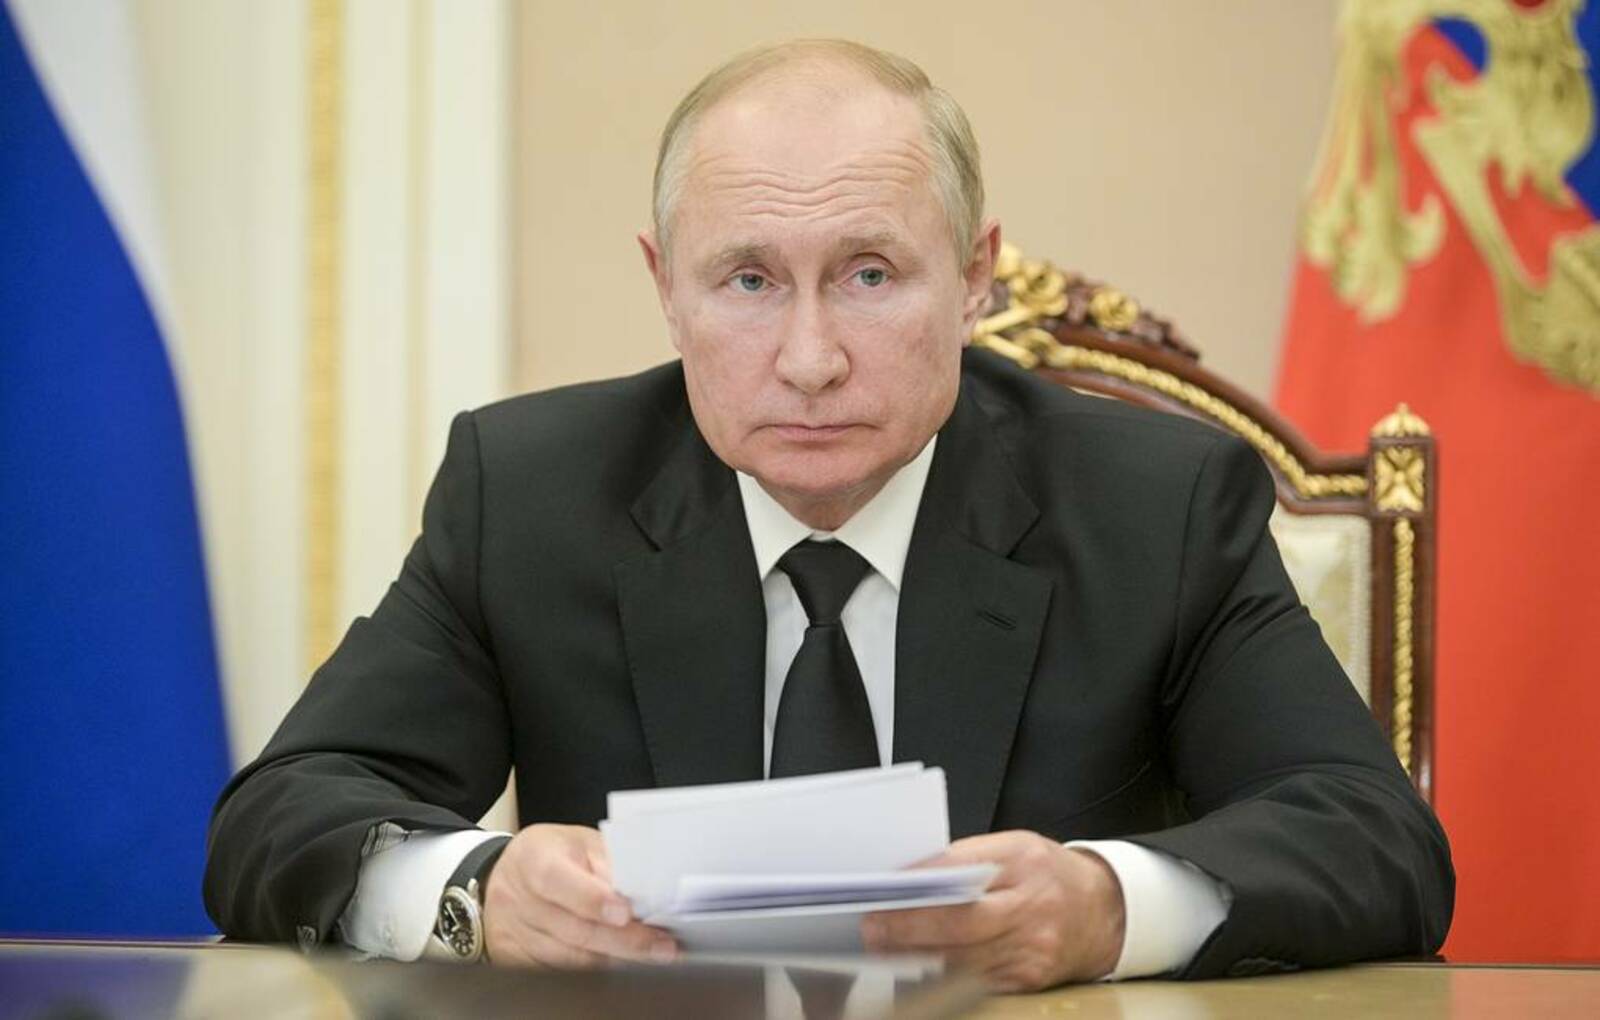 Путин: восемь стран не дают сделать полноценным договор против ядерных испытаний